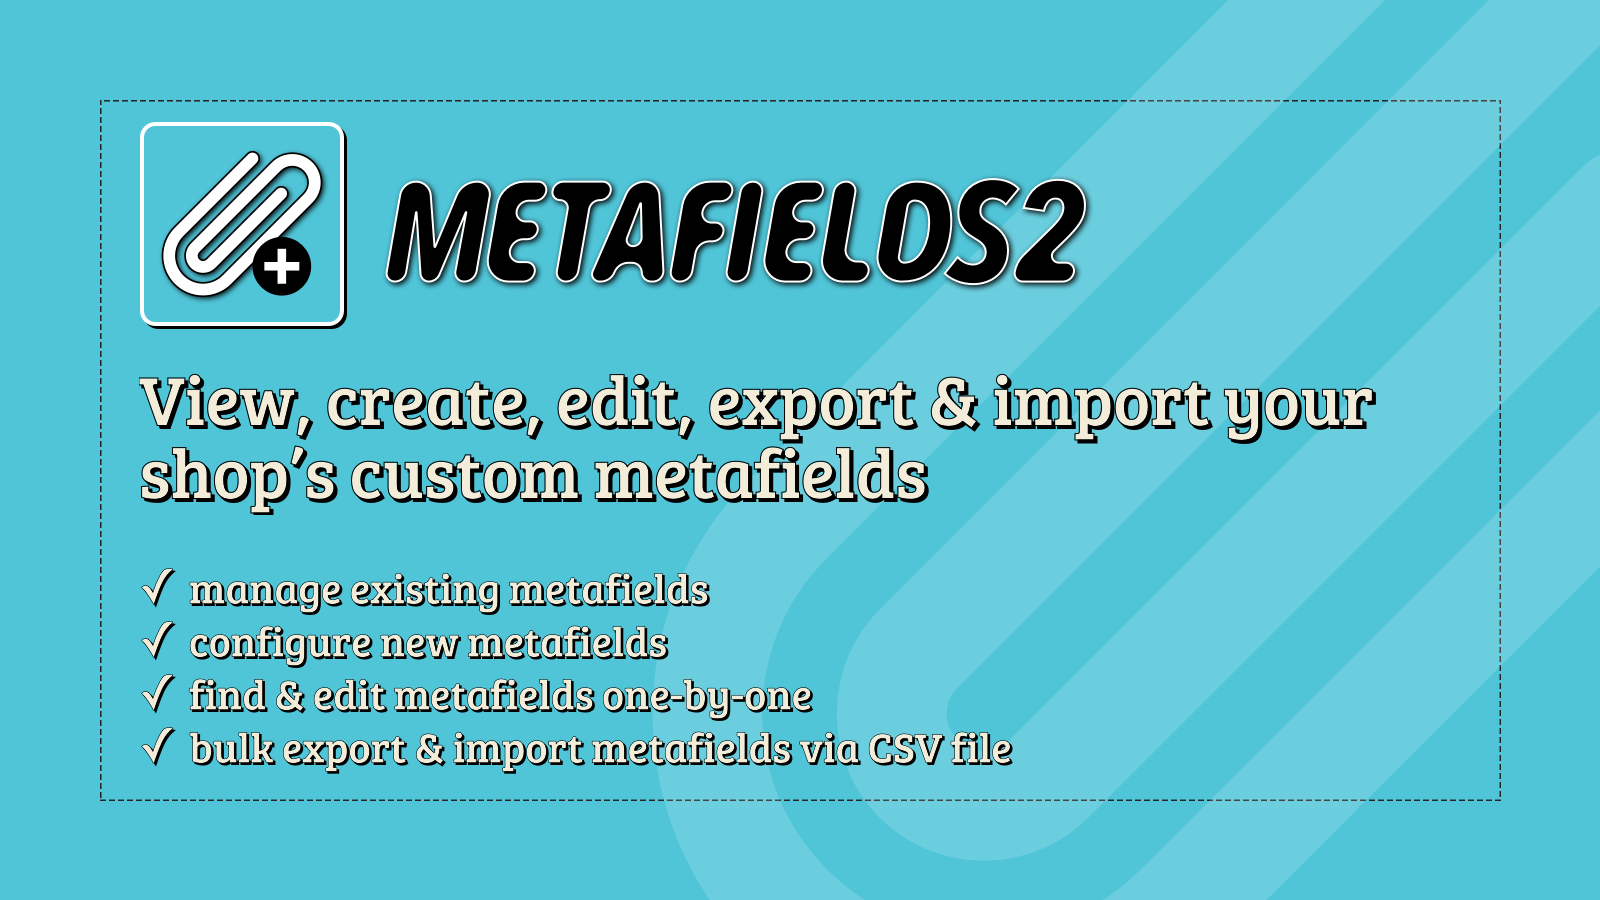 Metafields2 - Opret, rediger, eksporter/importer dine brugerdefinerede metafelter